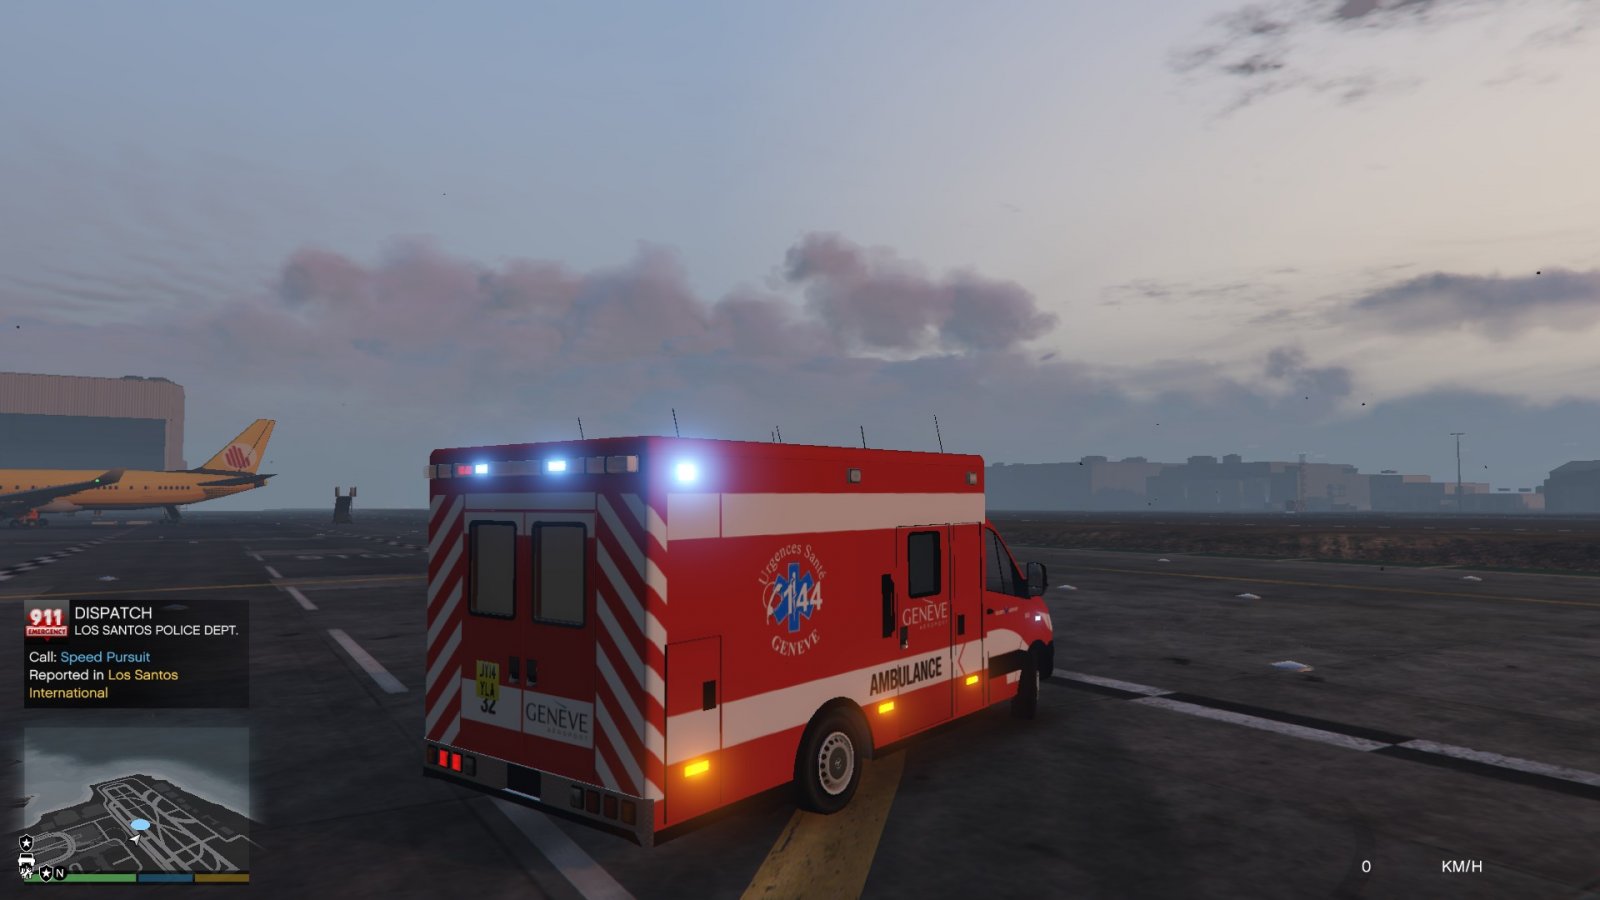 Geneva International Airport Fire Department ambulance ( Switzerland) 1.0 release / Ambulance des pompiers de l'Aéroport International de Genève, Suisse 1.0